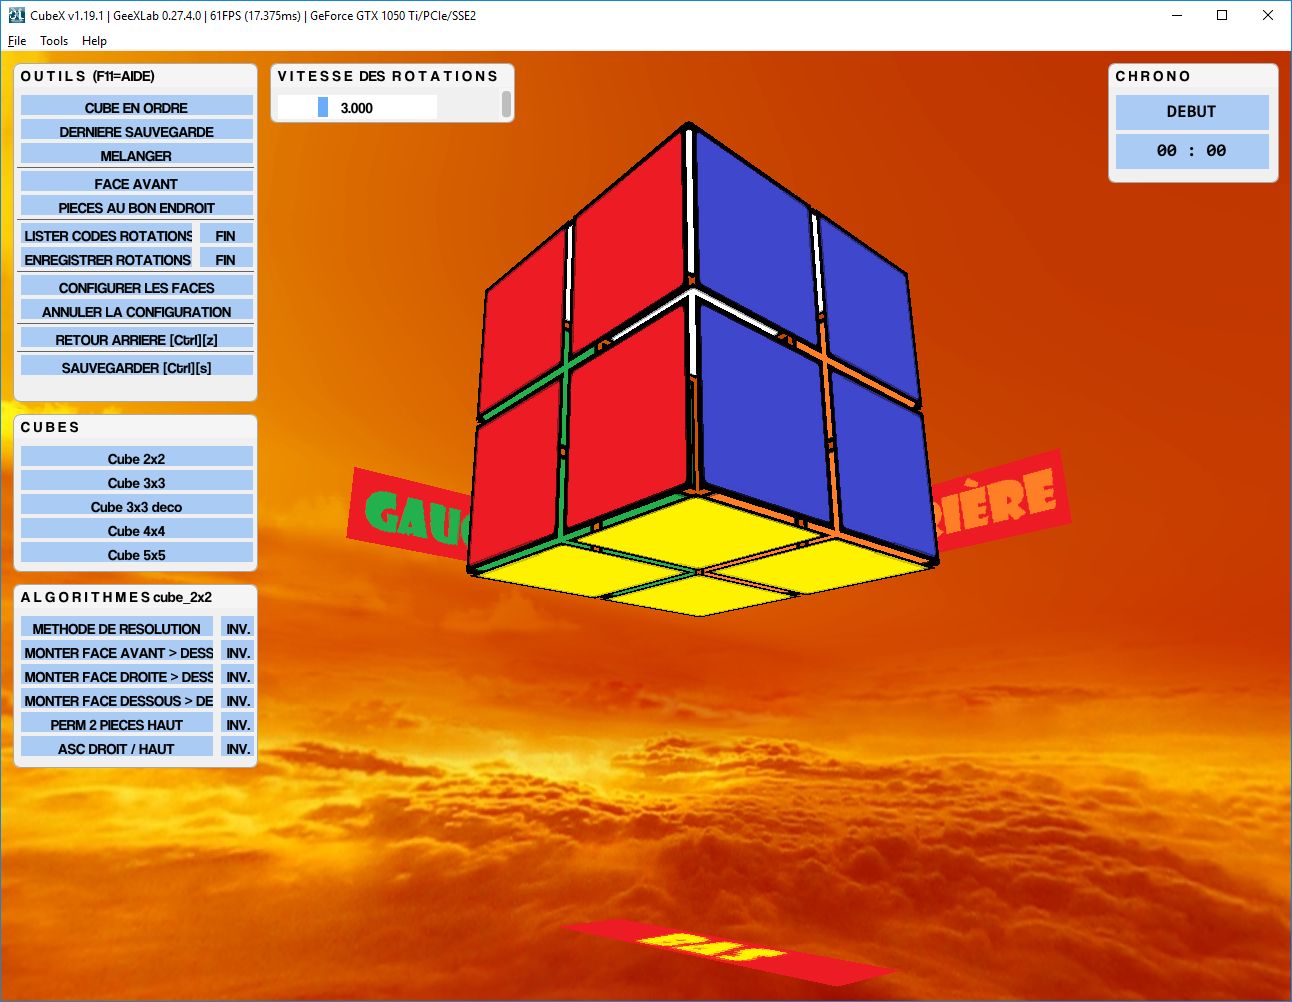 Cube 3x3 déco